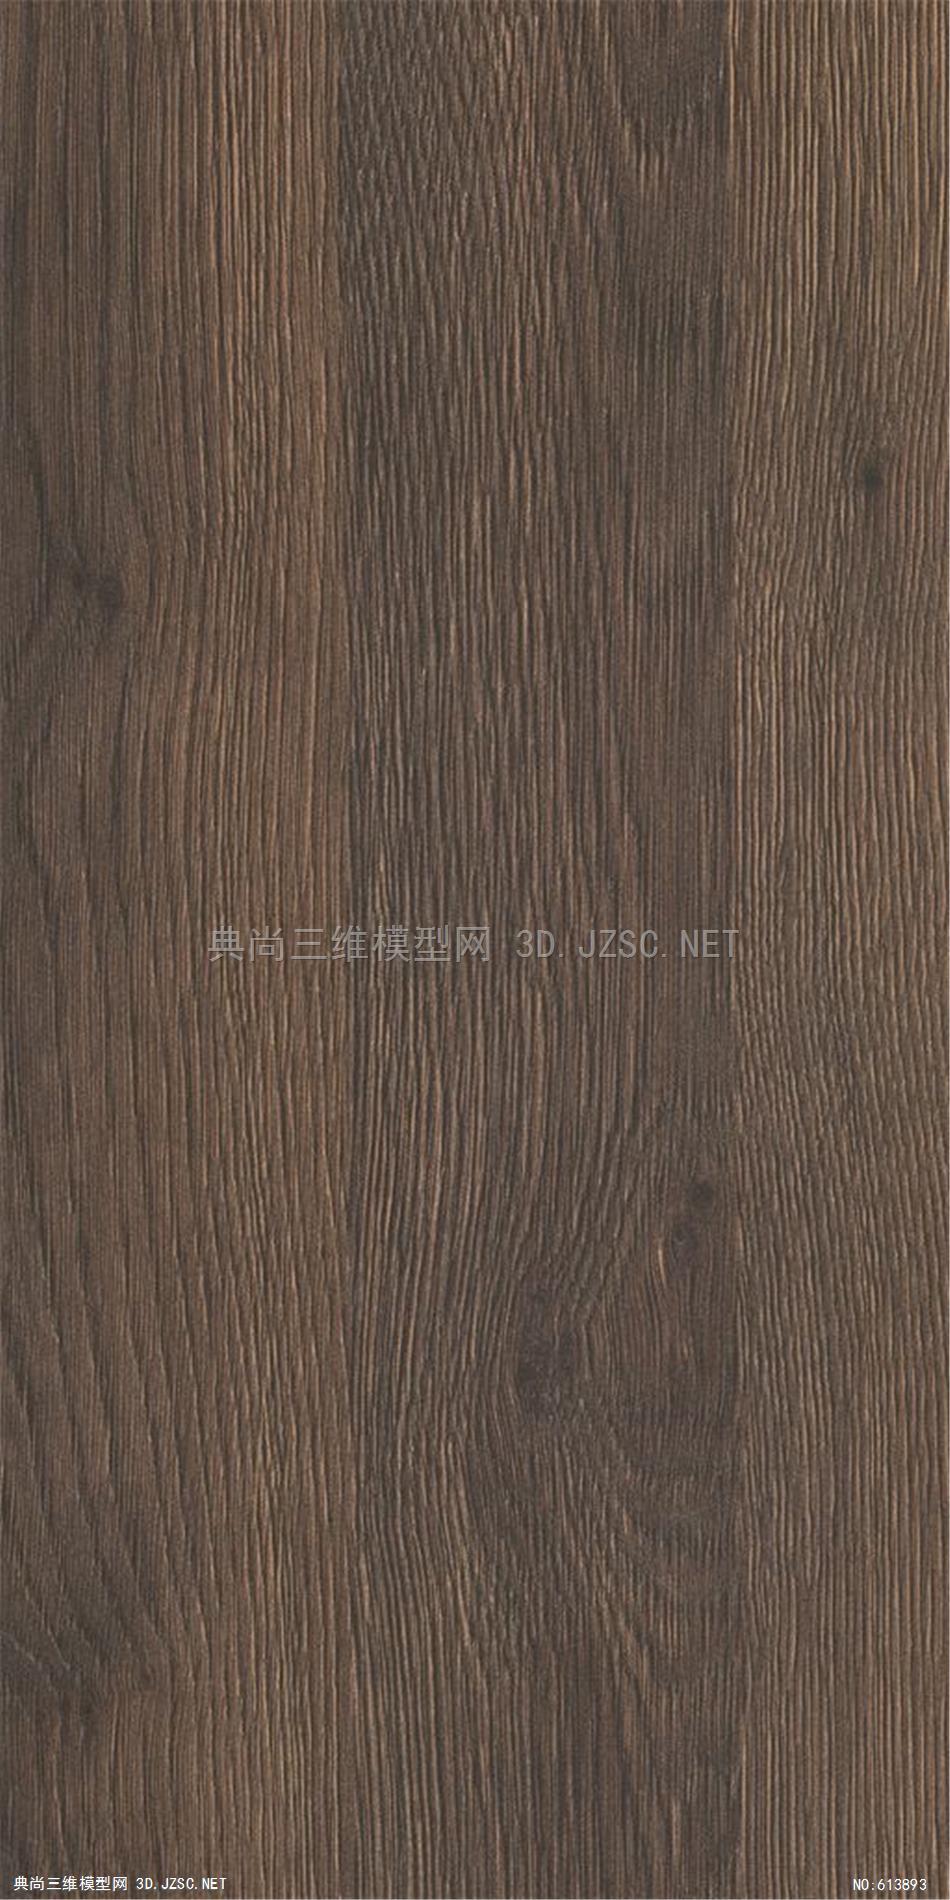 木饰面 木纹 木材 高清材质贴图 (110)材质贴图